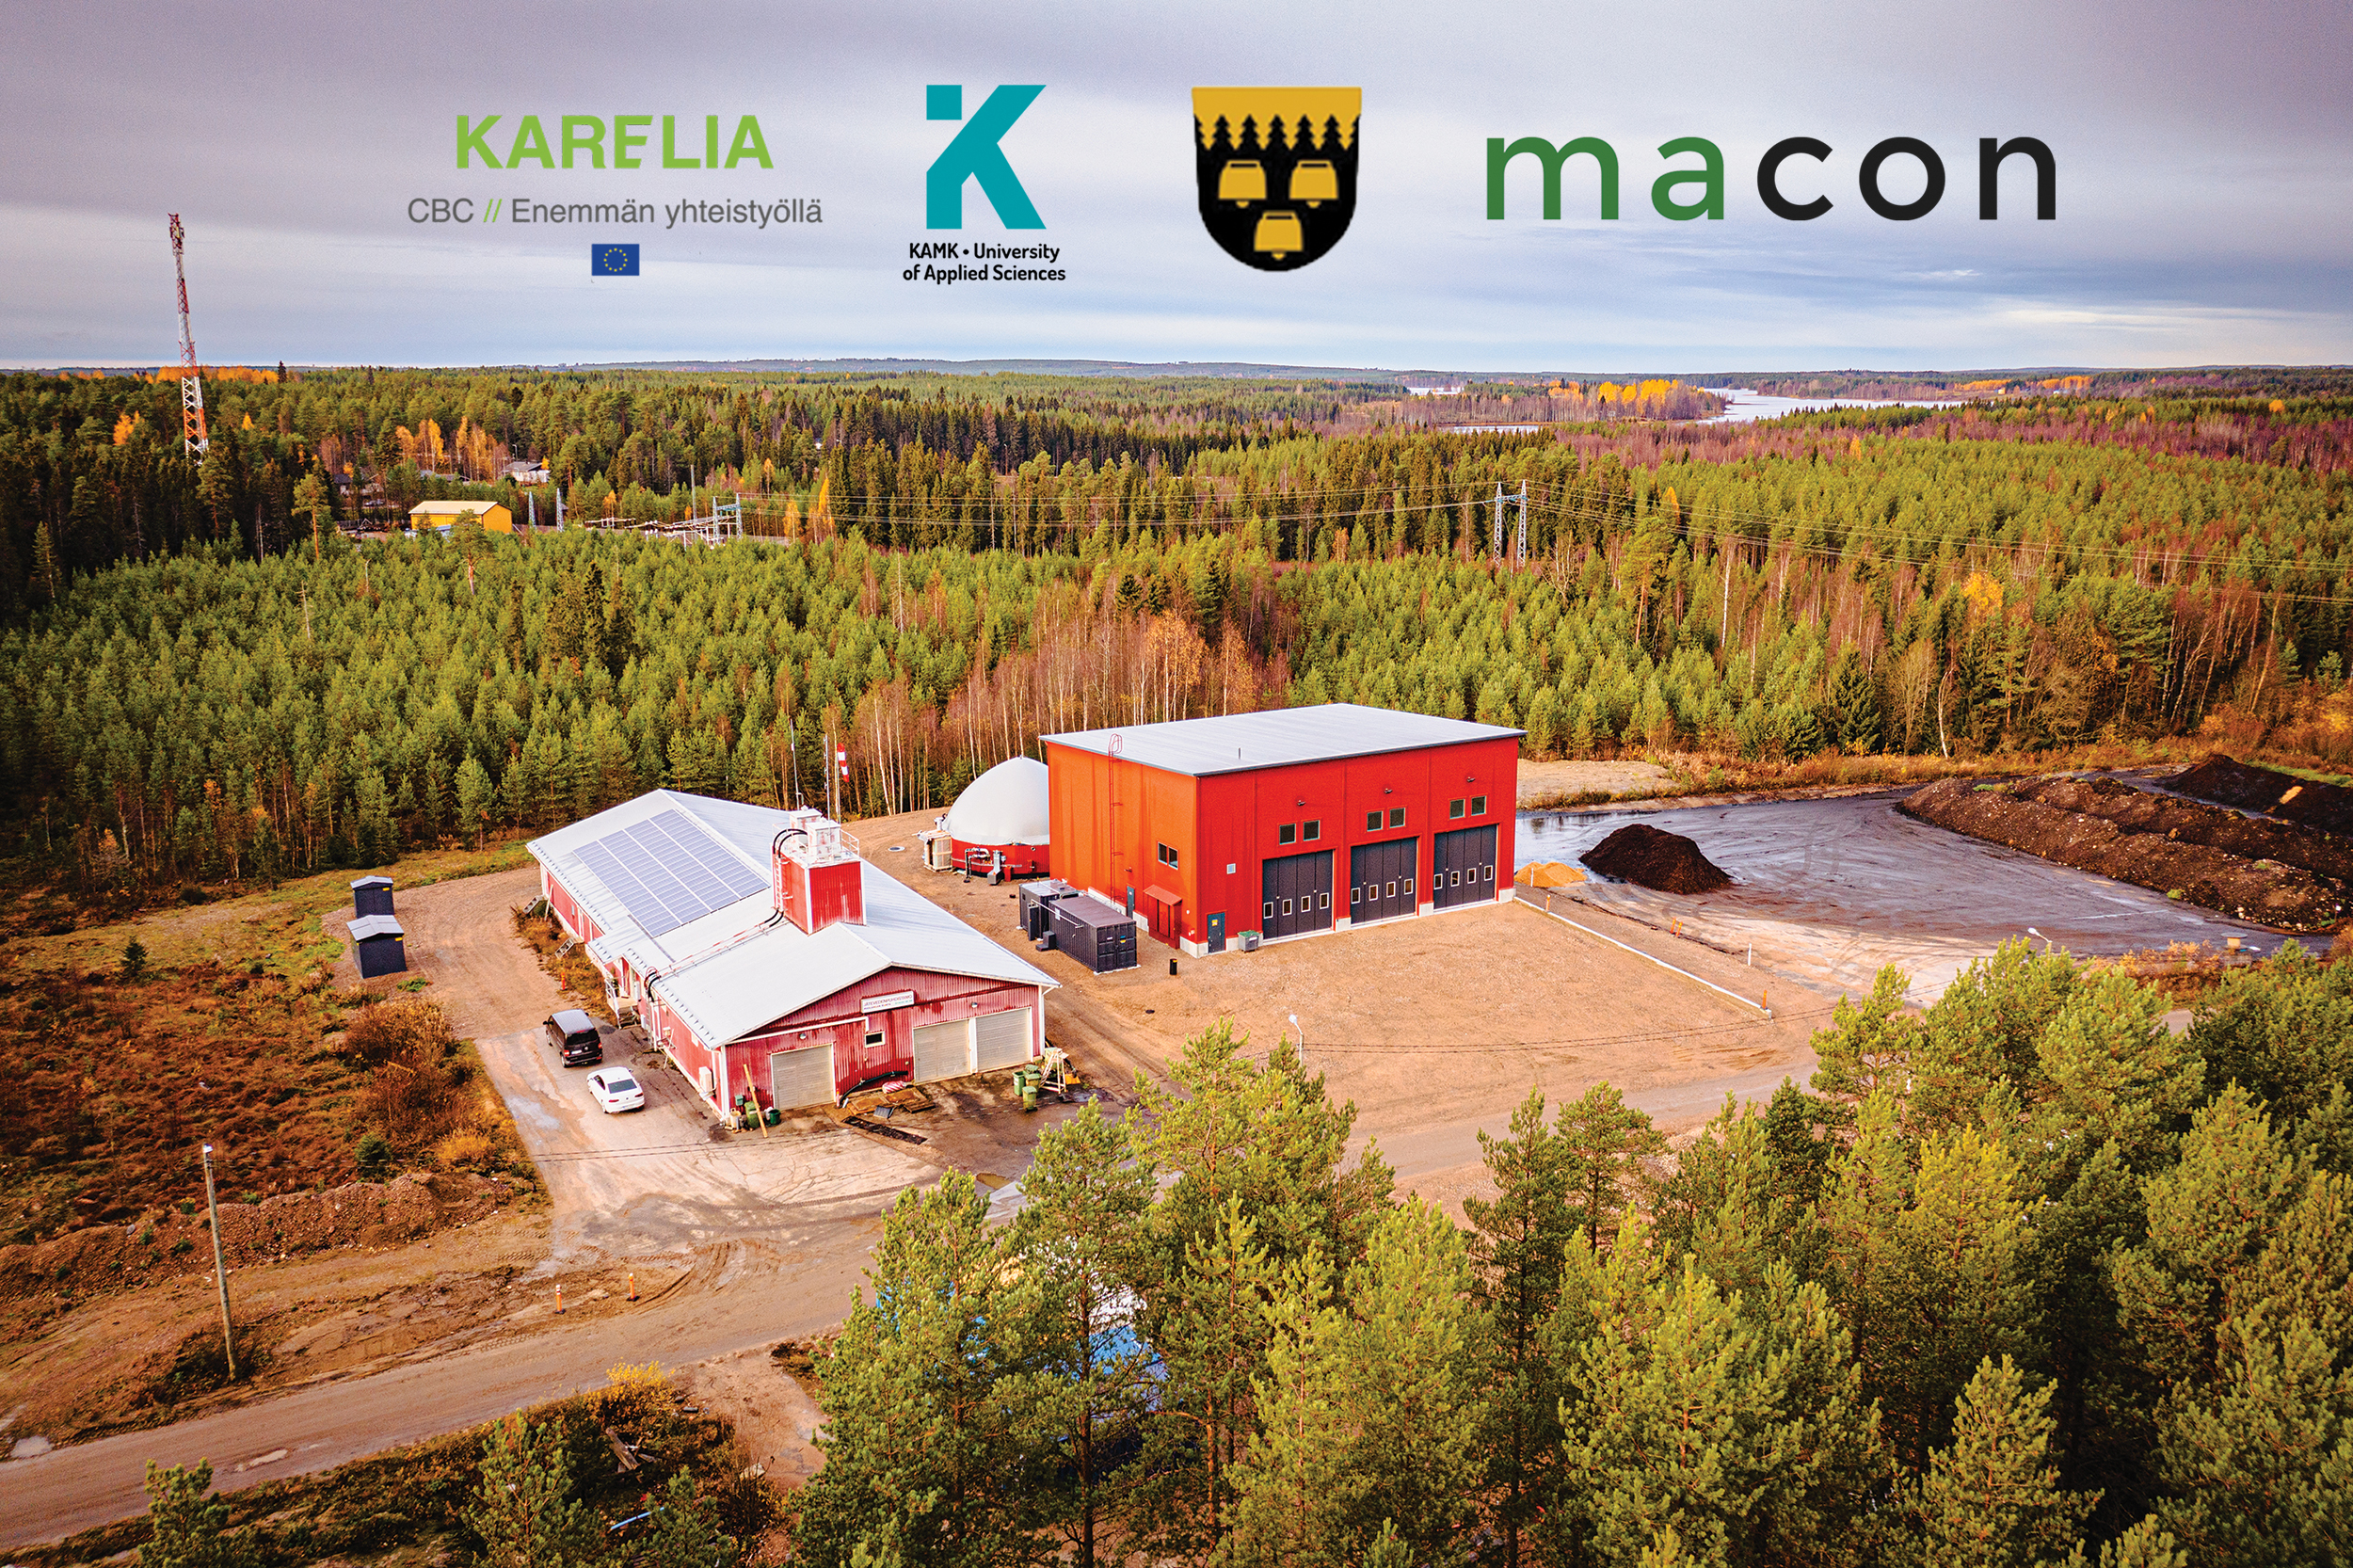 Kara-hankkeen kuva Puolangan biokaasulaitoksesta, logot